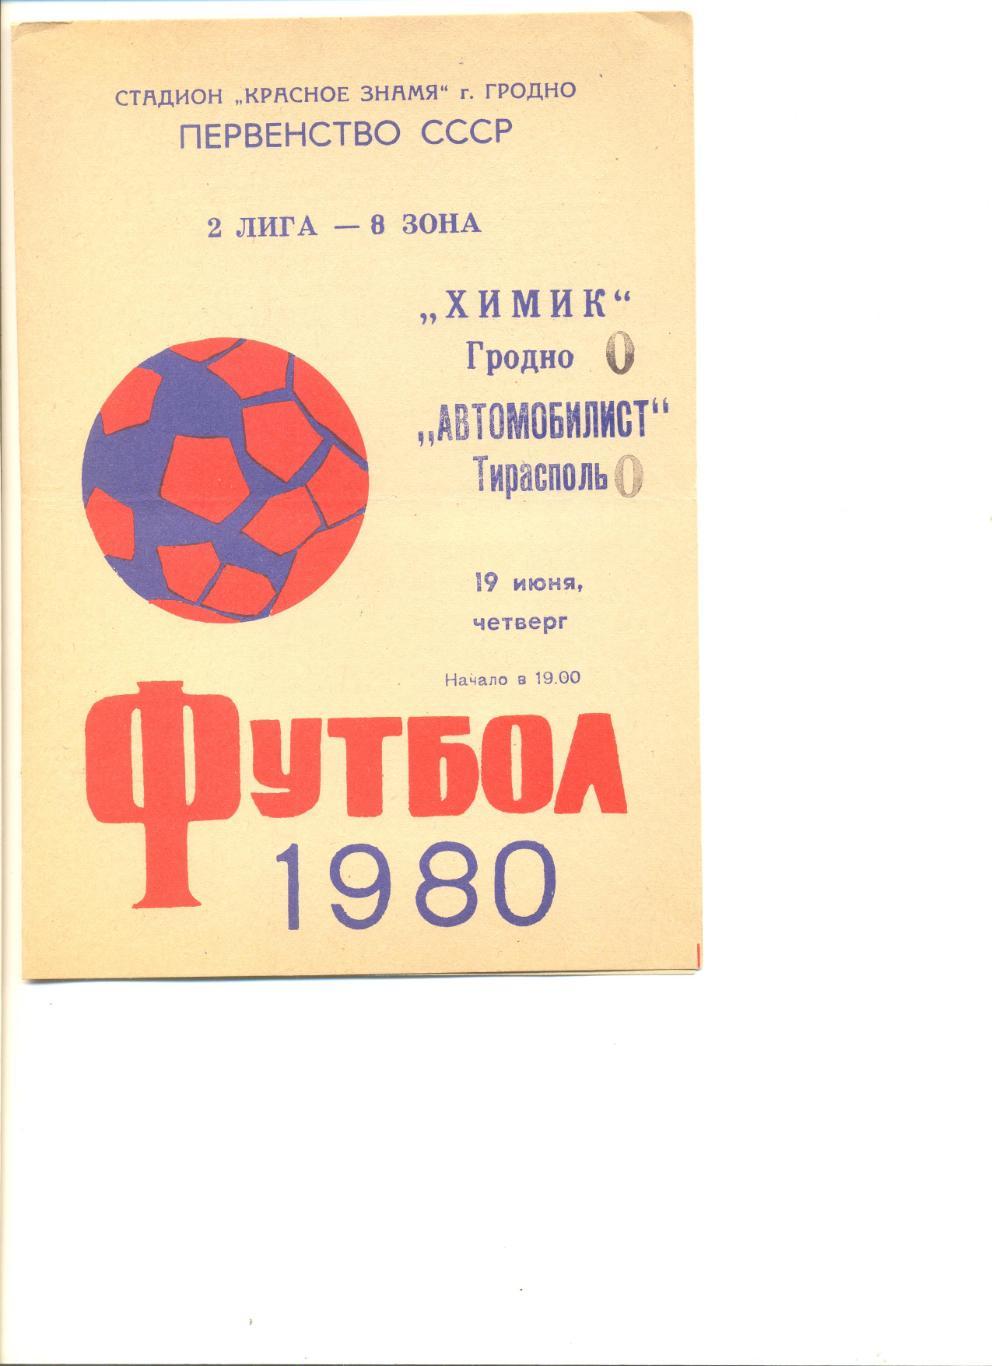 Химик Гродно - Автомобилист Тирасполь 19.06.1980 г.